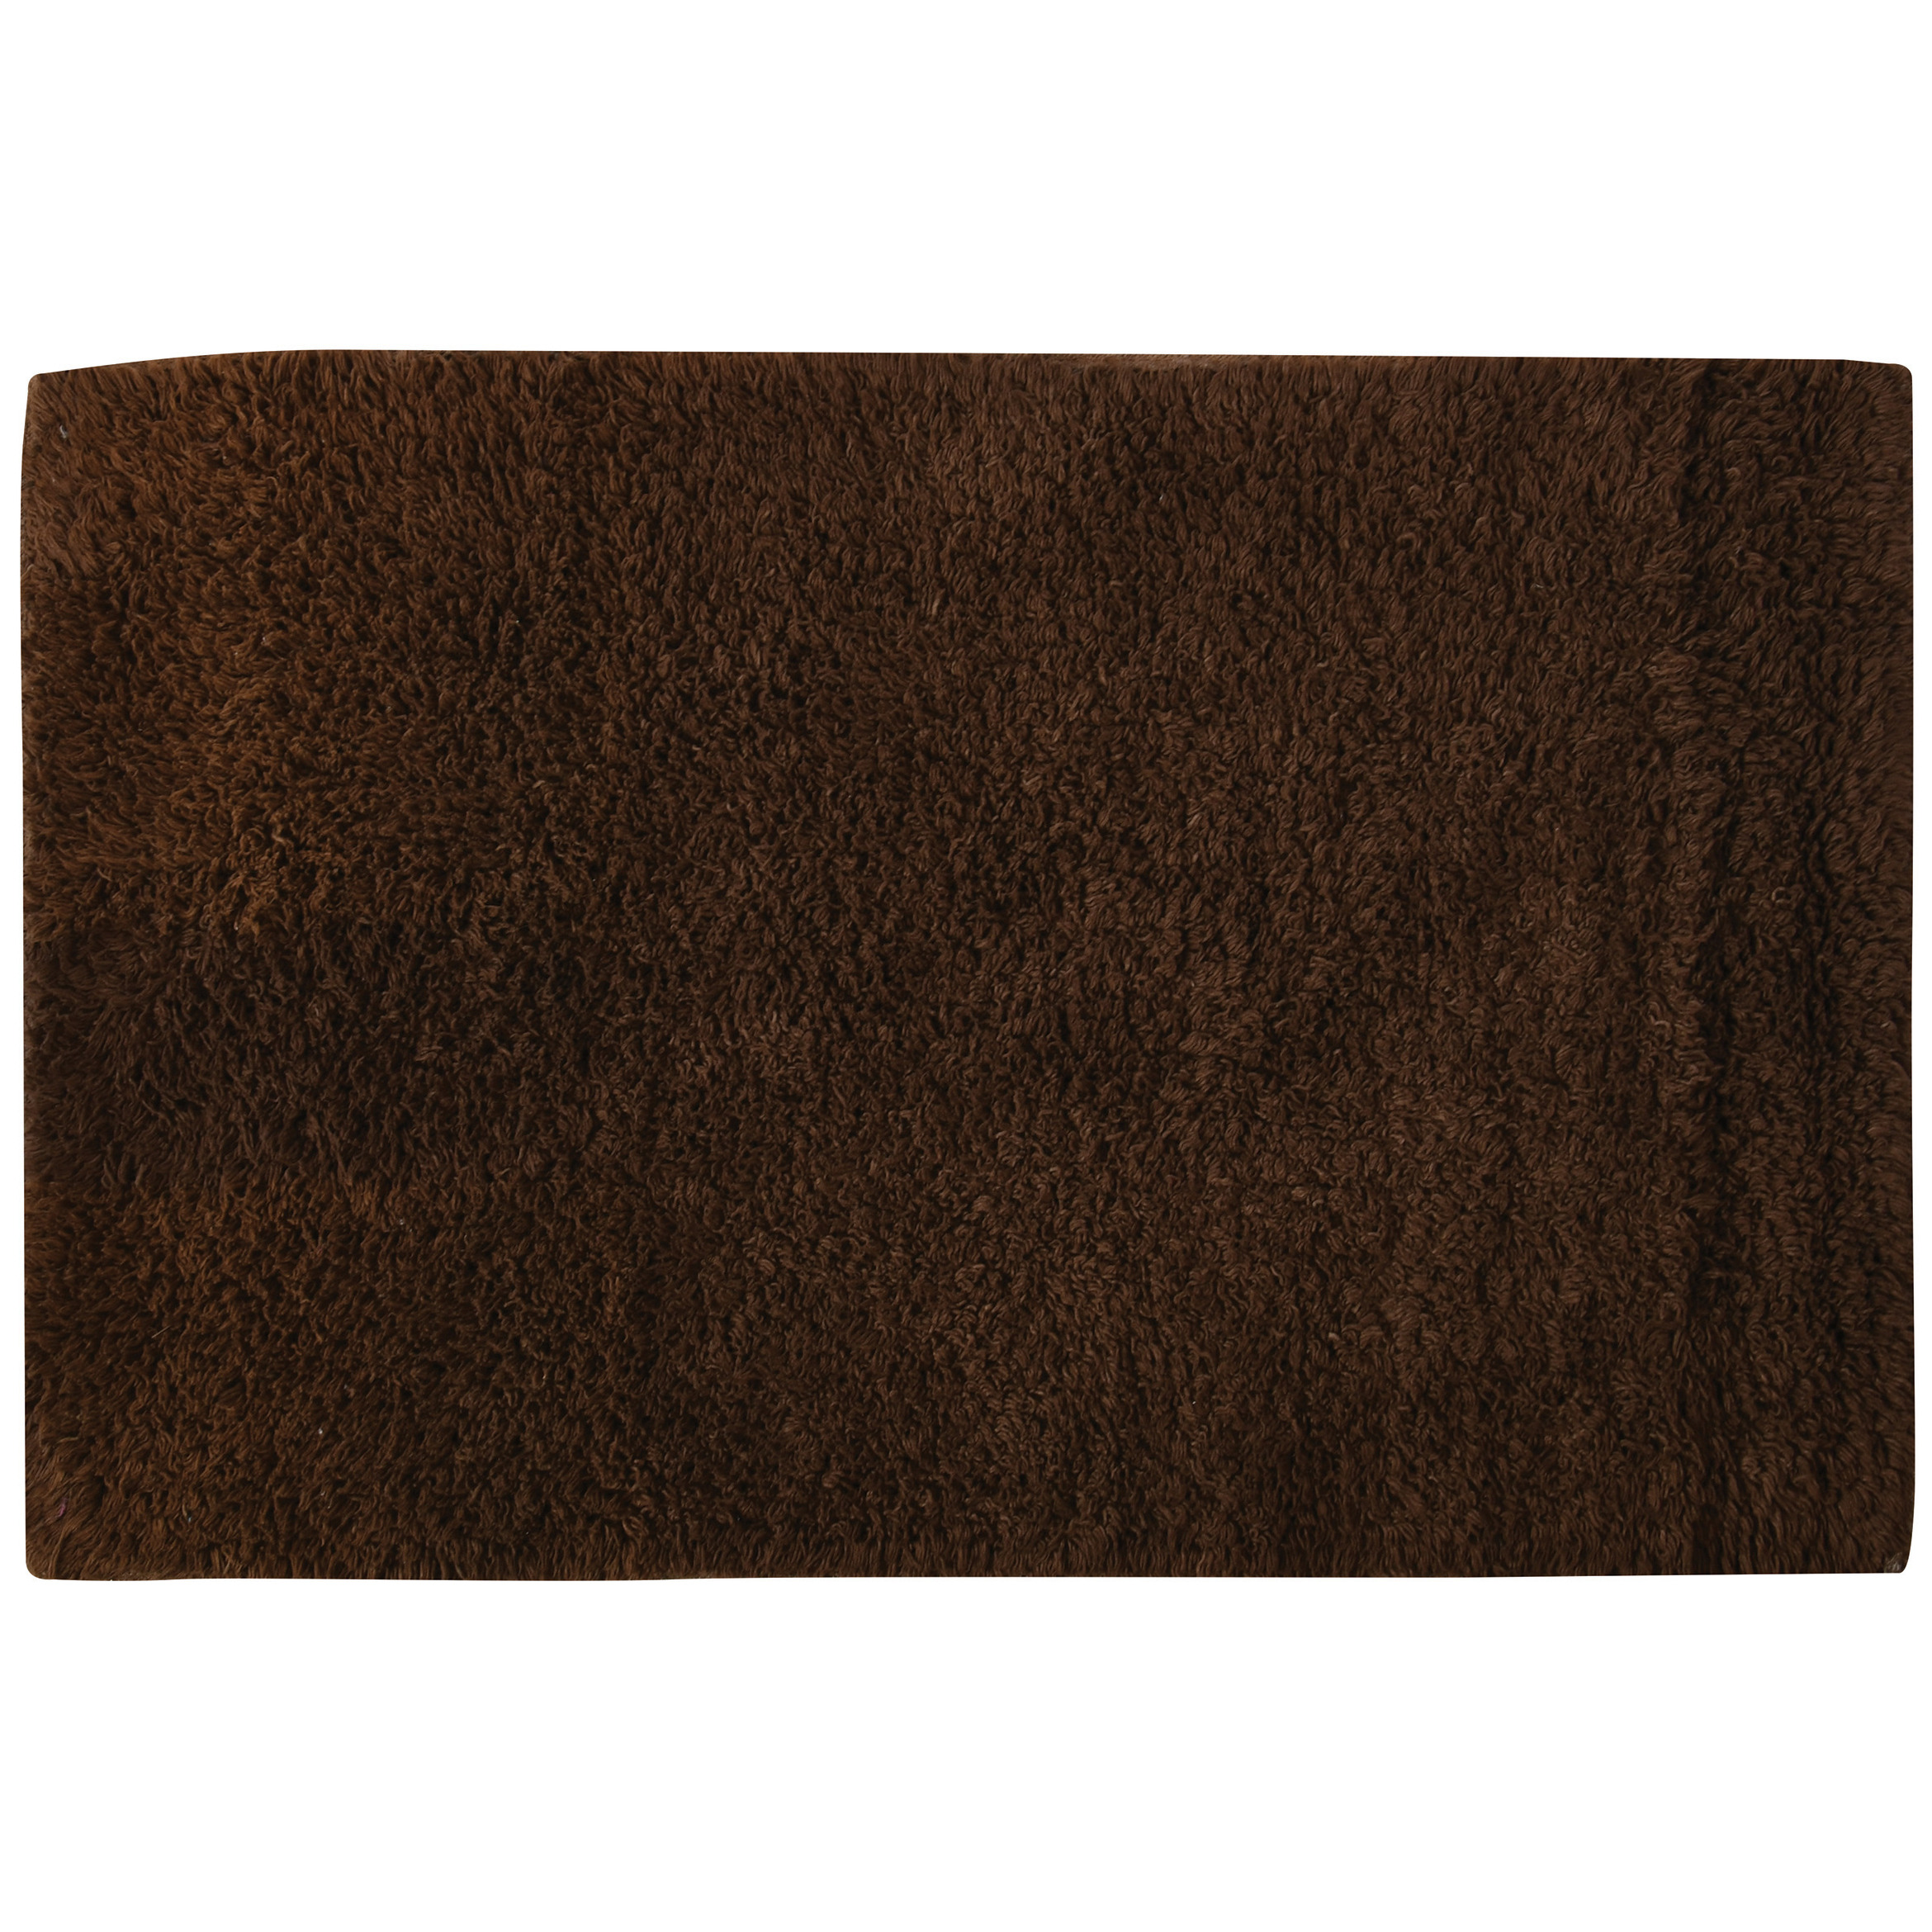 Badkamerkleedje-badmat voor op de vloer bruin 45 x 70 cm